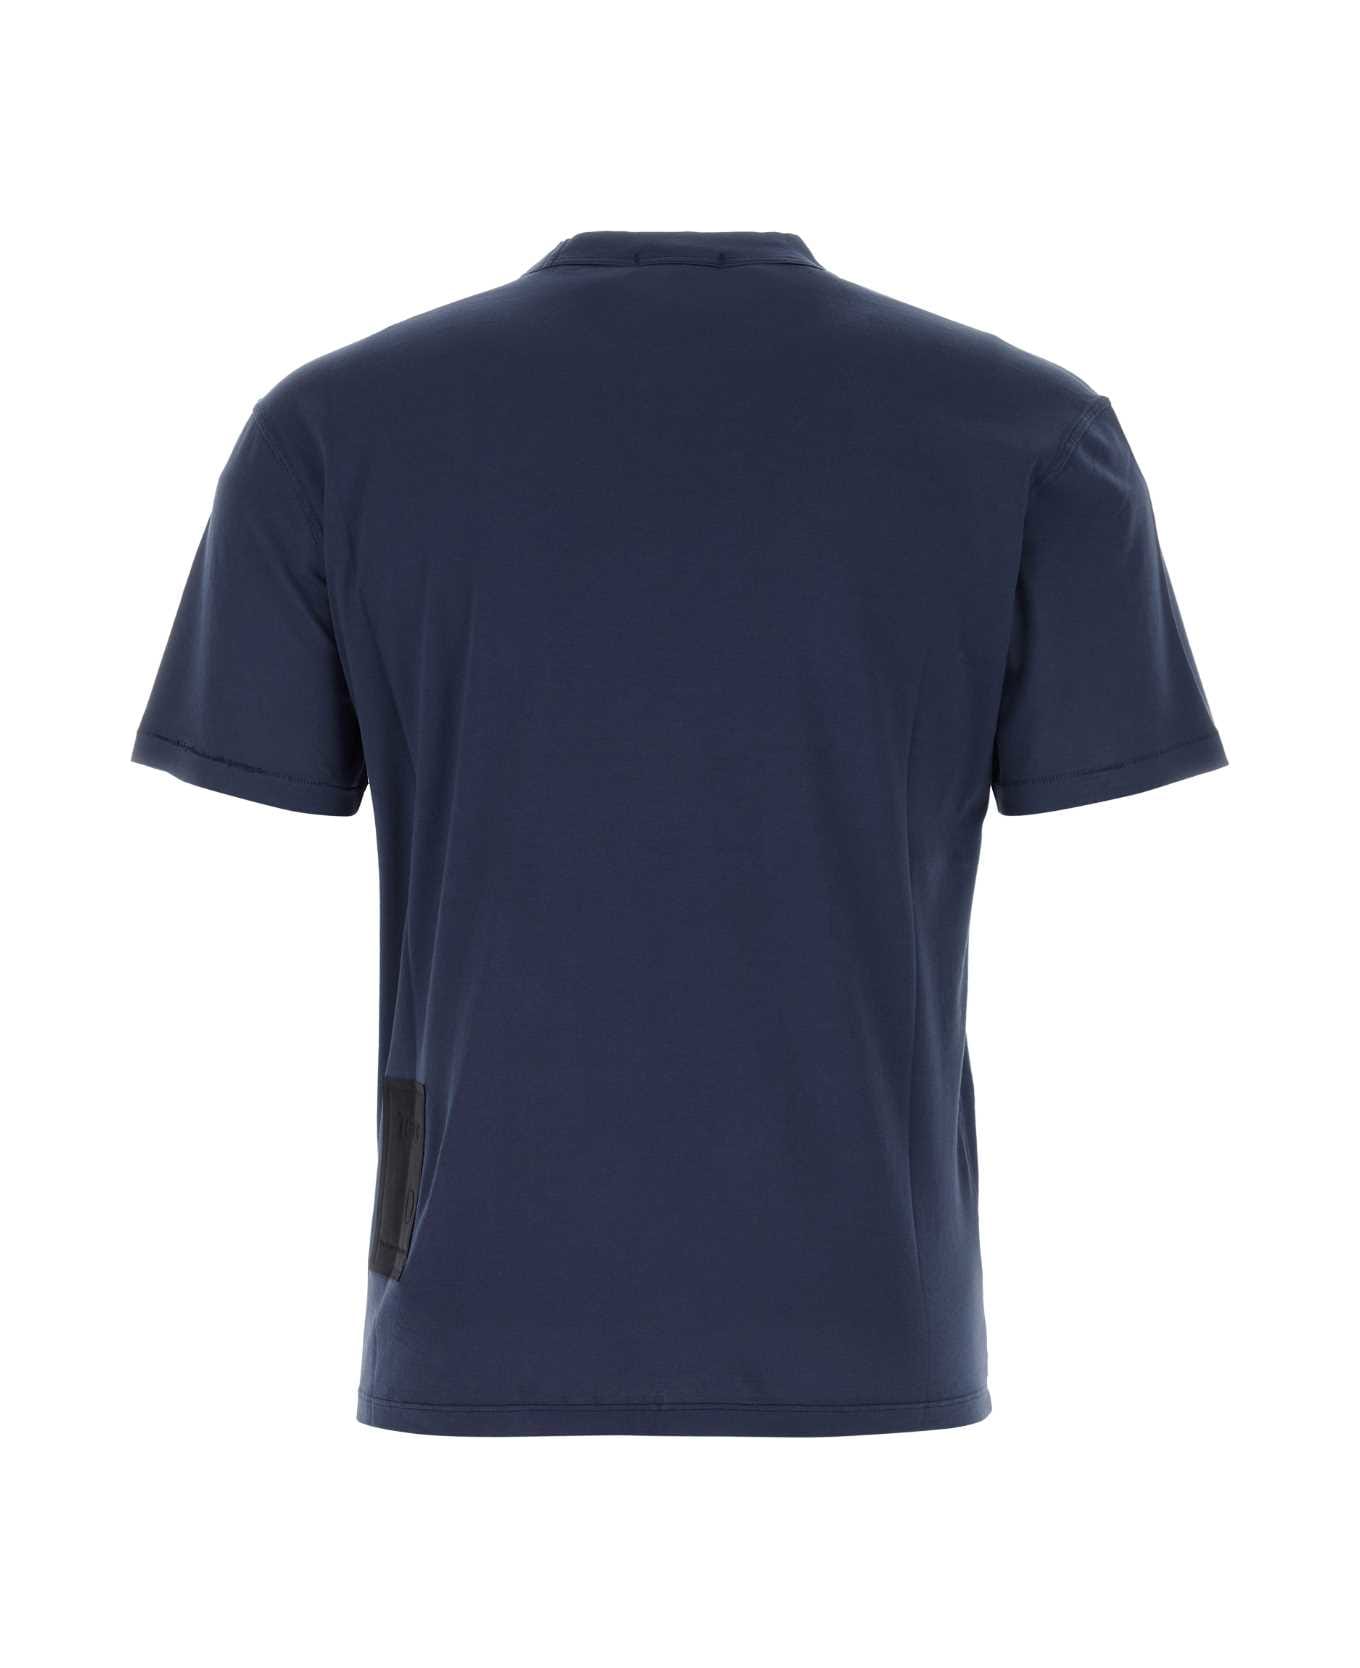 Ten C Navy Blue Cotton T-shirt - BLUNOTTE